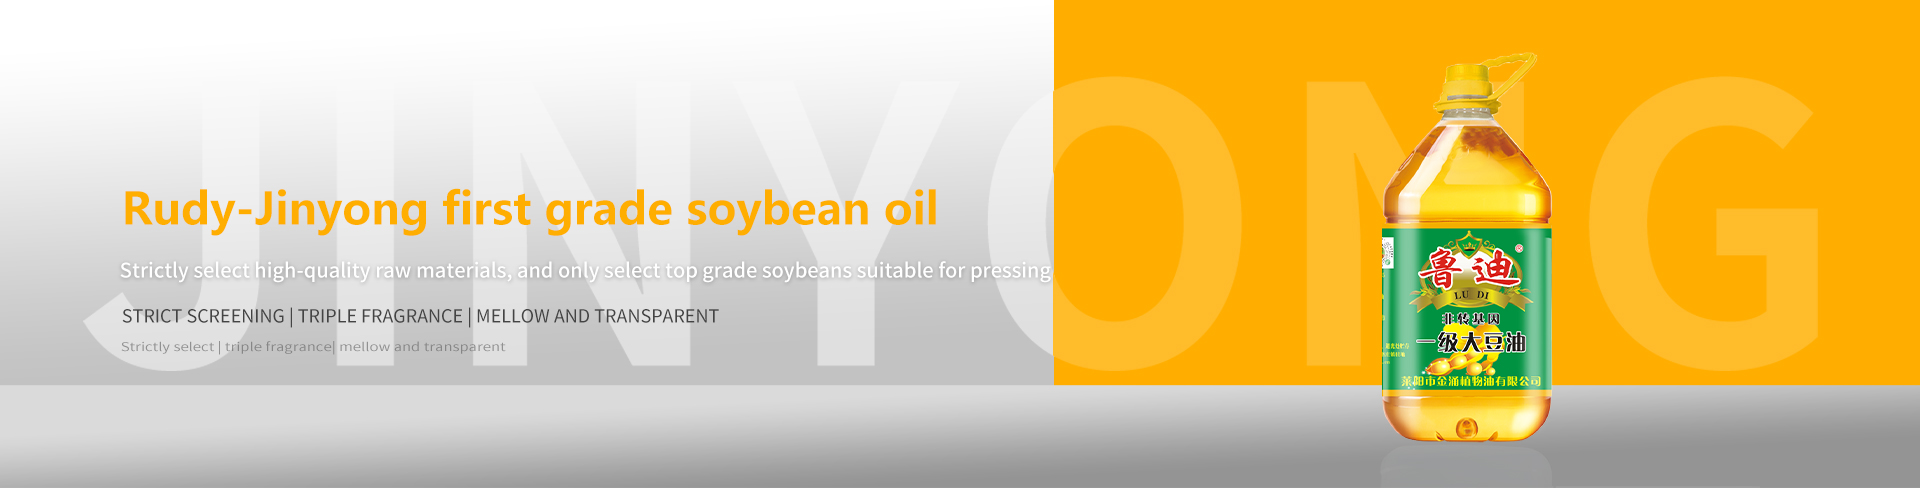 Soybean oil series